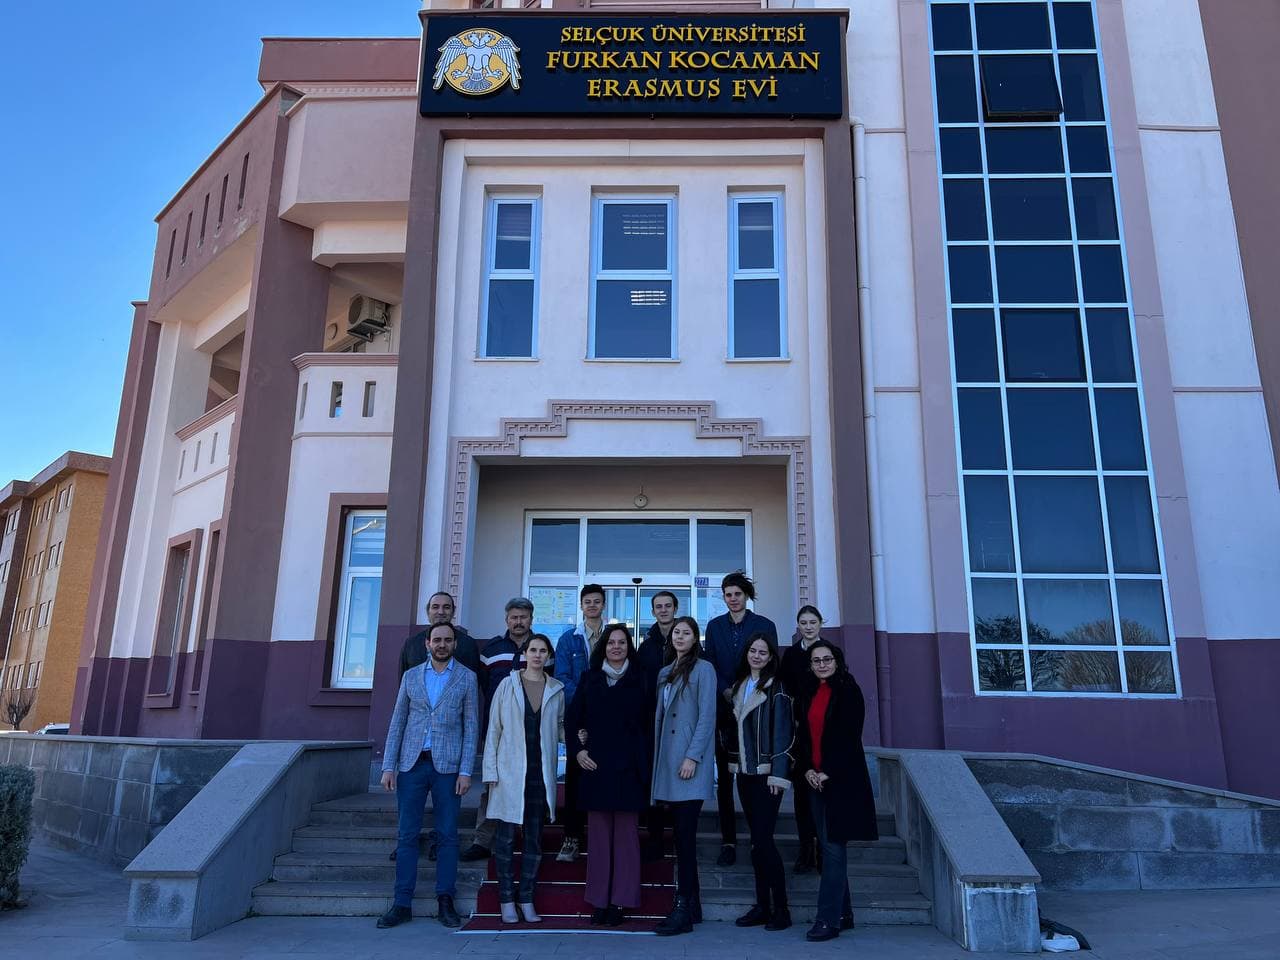 Студенти побували у турецькому Університеті Сельчук